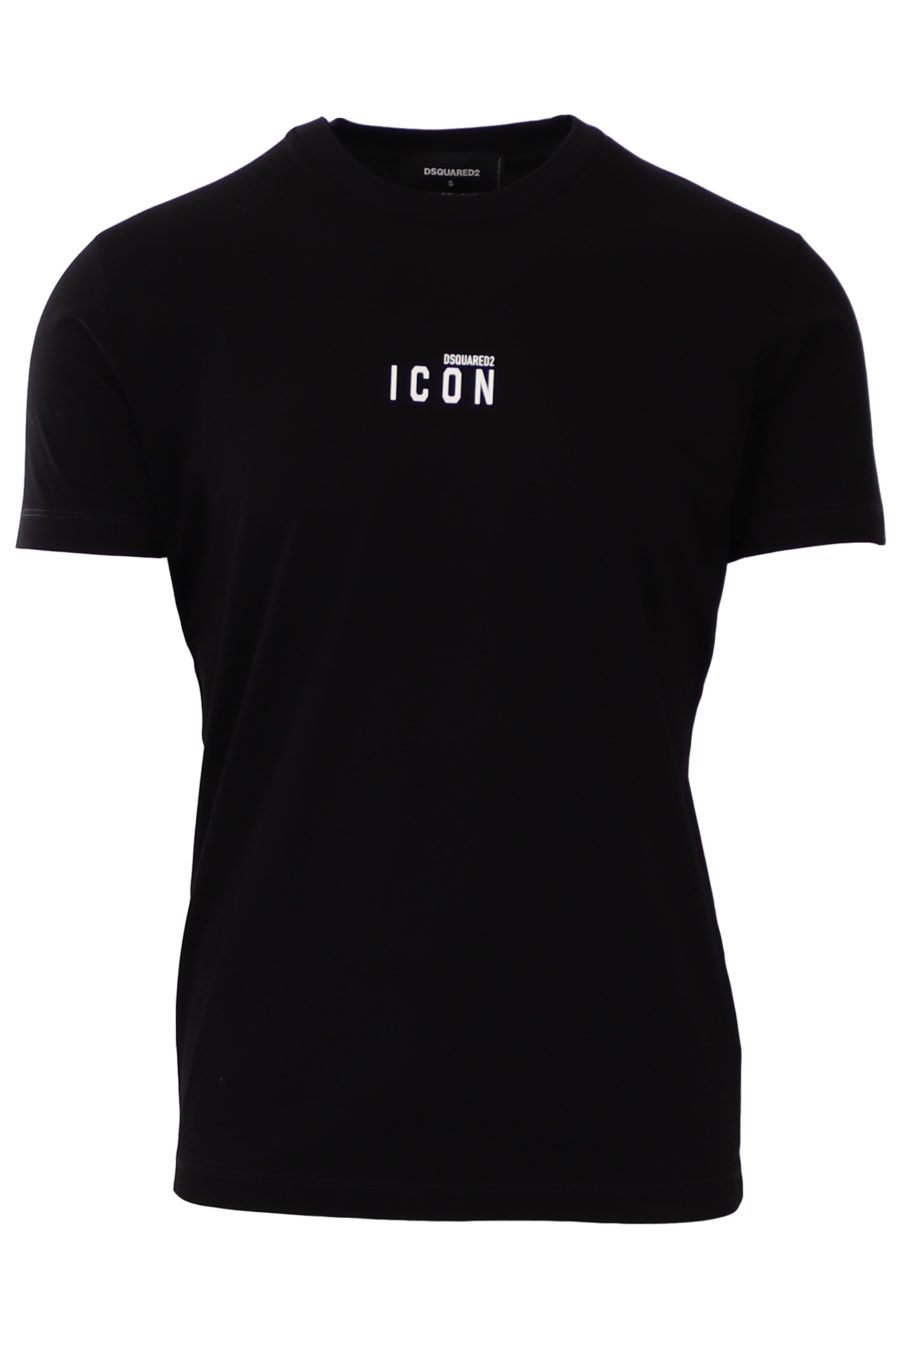 Camiseta Dsquared2 negra con icon blanco en el centro - f283758b96fd12297da3afff39e8cbefe4f4eba3